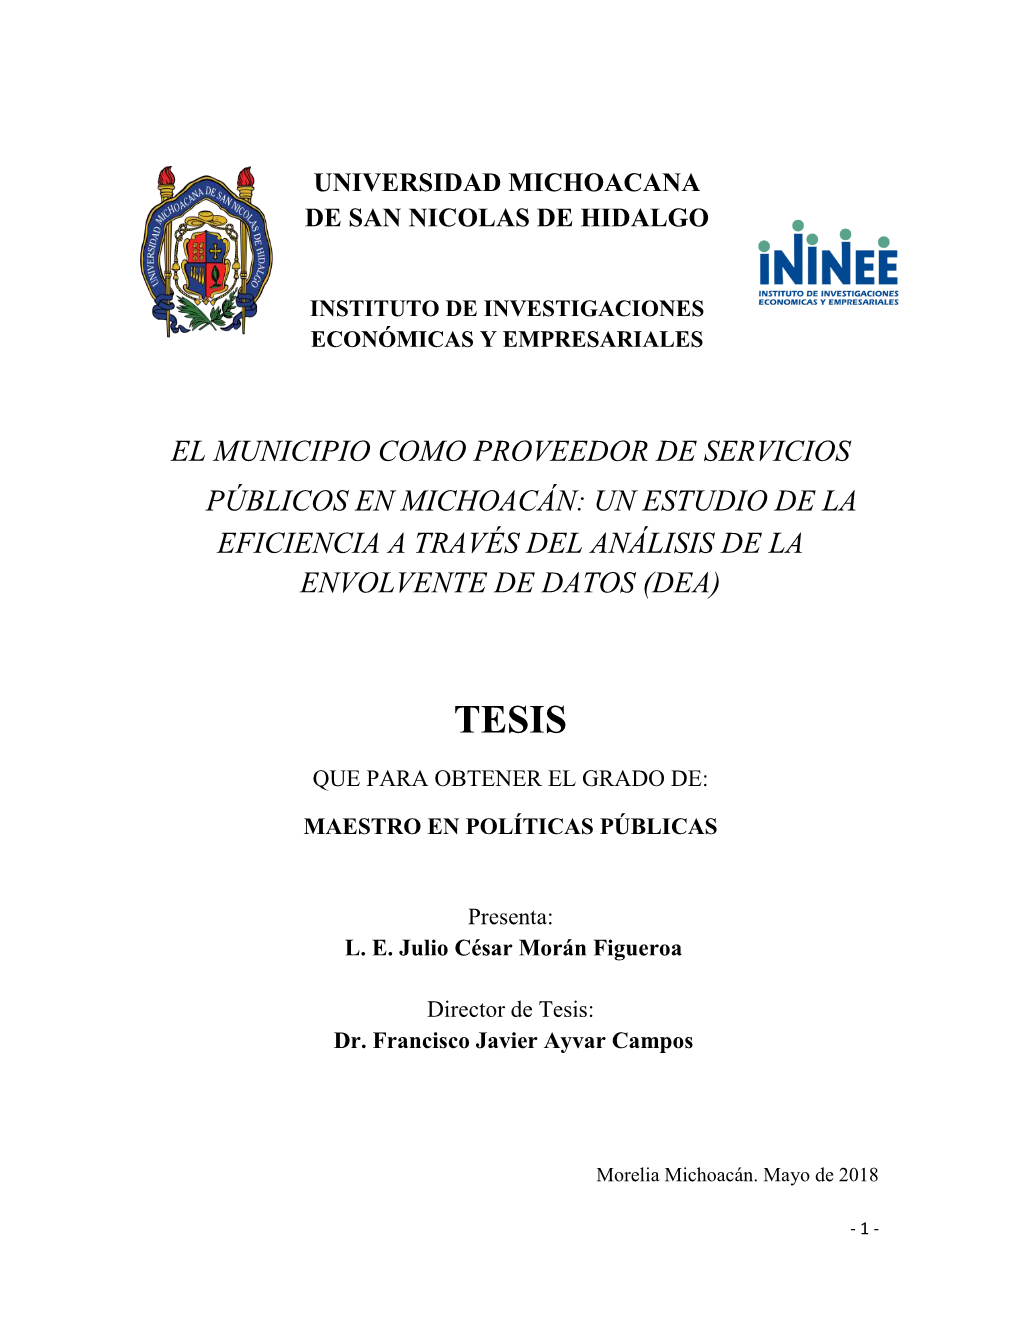 El Municipio Como Proveedor De Servicios Públicos En Michoacán: Un Estudio De La Eficiencia a Través Del Análisis De La Envolvente De Datos (Dea)